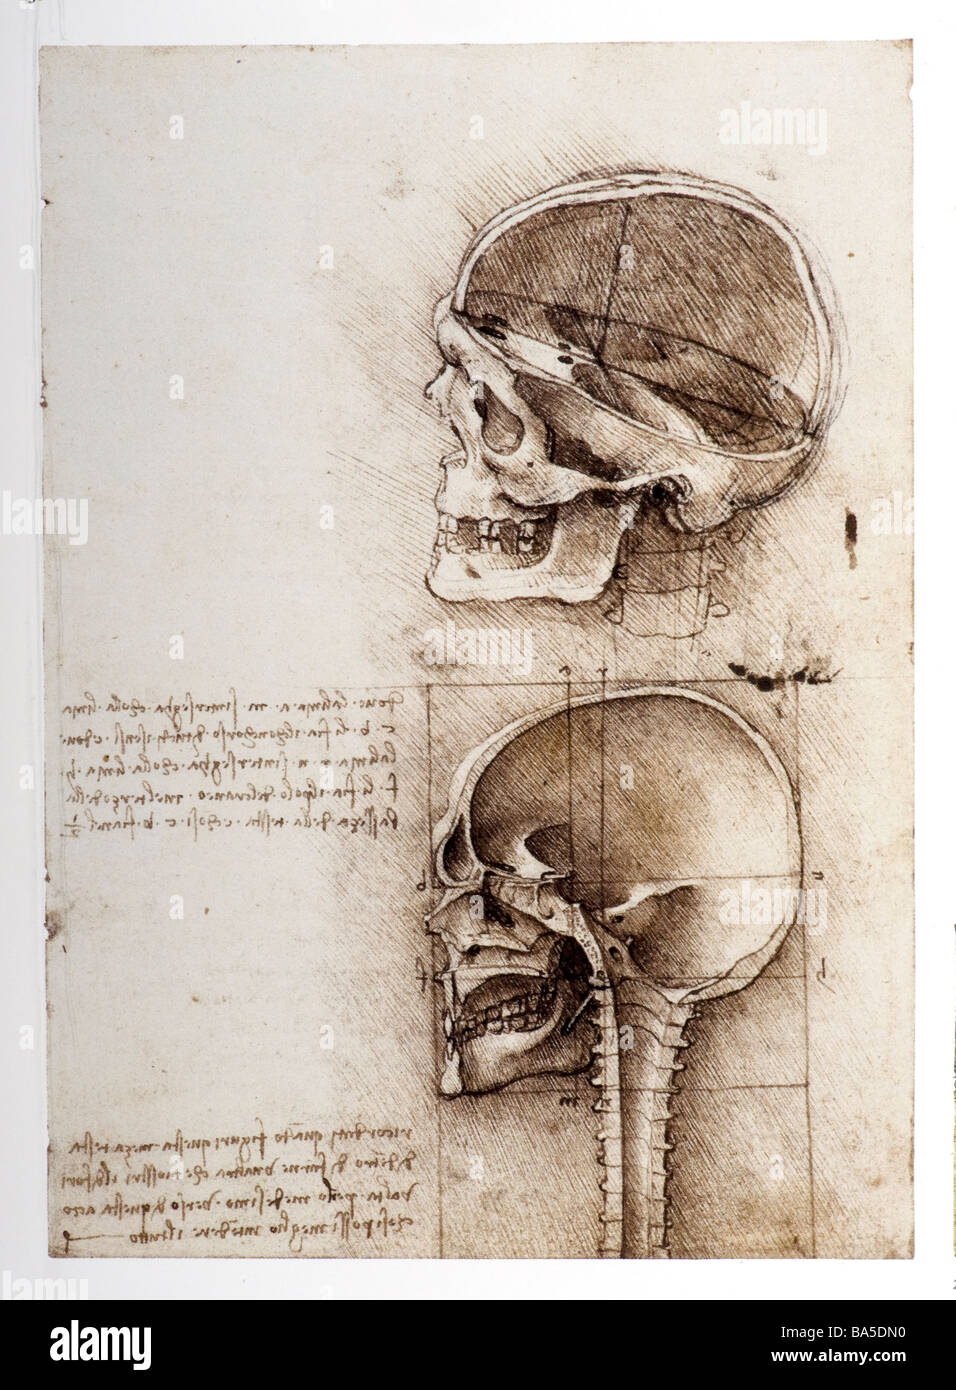 Estudios anatómicos del cráneo humano de Leonardo da Vinci Foto de stock